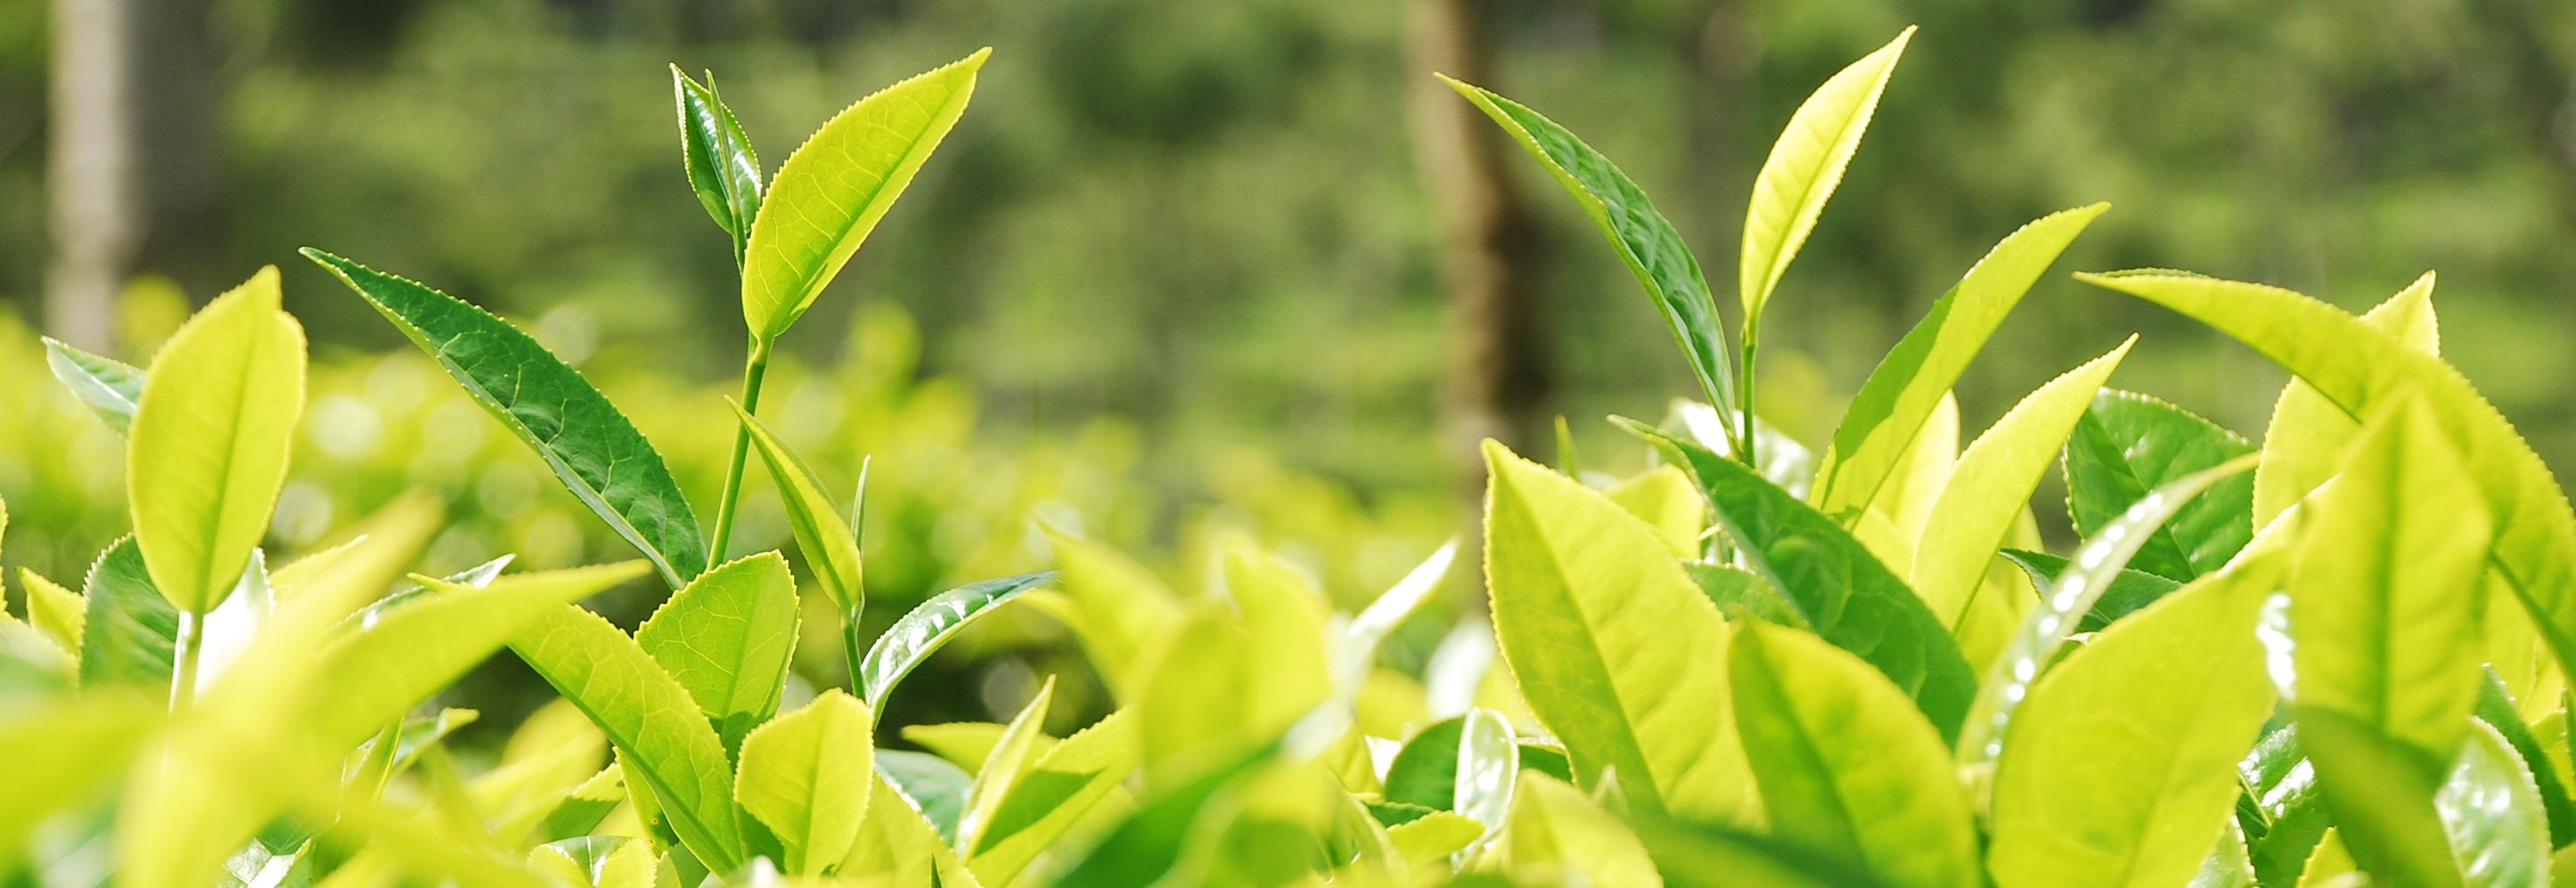 Tea leaves, India © Rainforest Alliance